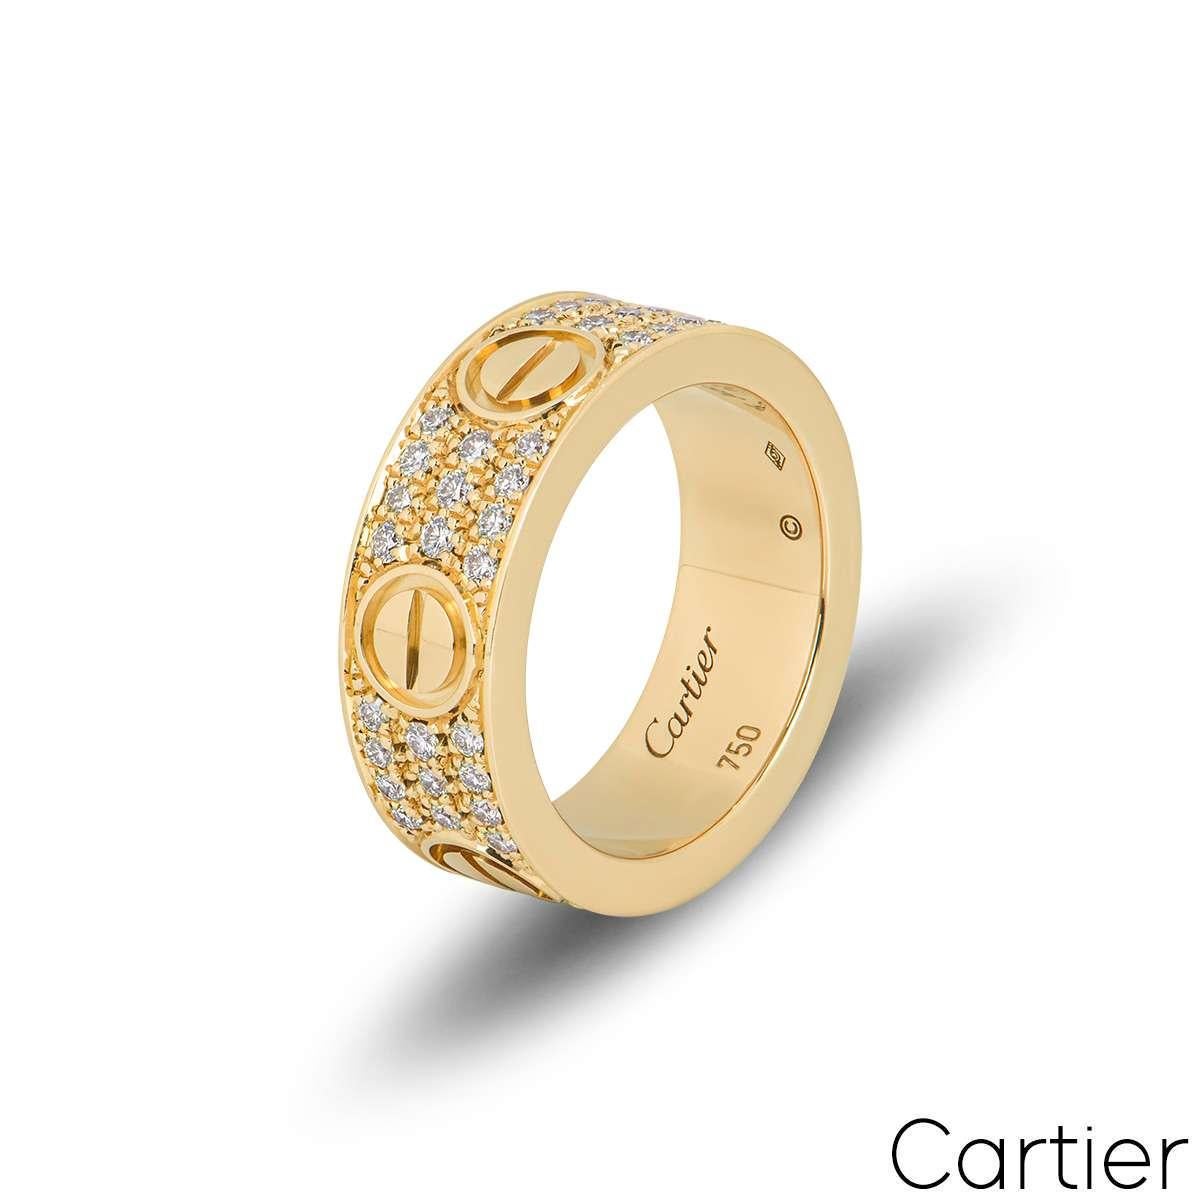 Ein Diamantring aus 18 Karat Gelbgold von Cartier aus der Collection'S Love. Der Ring besteht aus den ikonischen Schraubenmotiven, die um die Außenkanten herum angeordnet sind. Zwischen den einzelnen Schraubenmotiven sind 66 runde Diamanten im